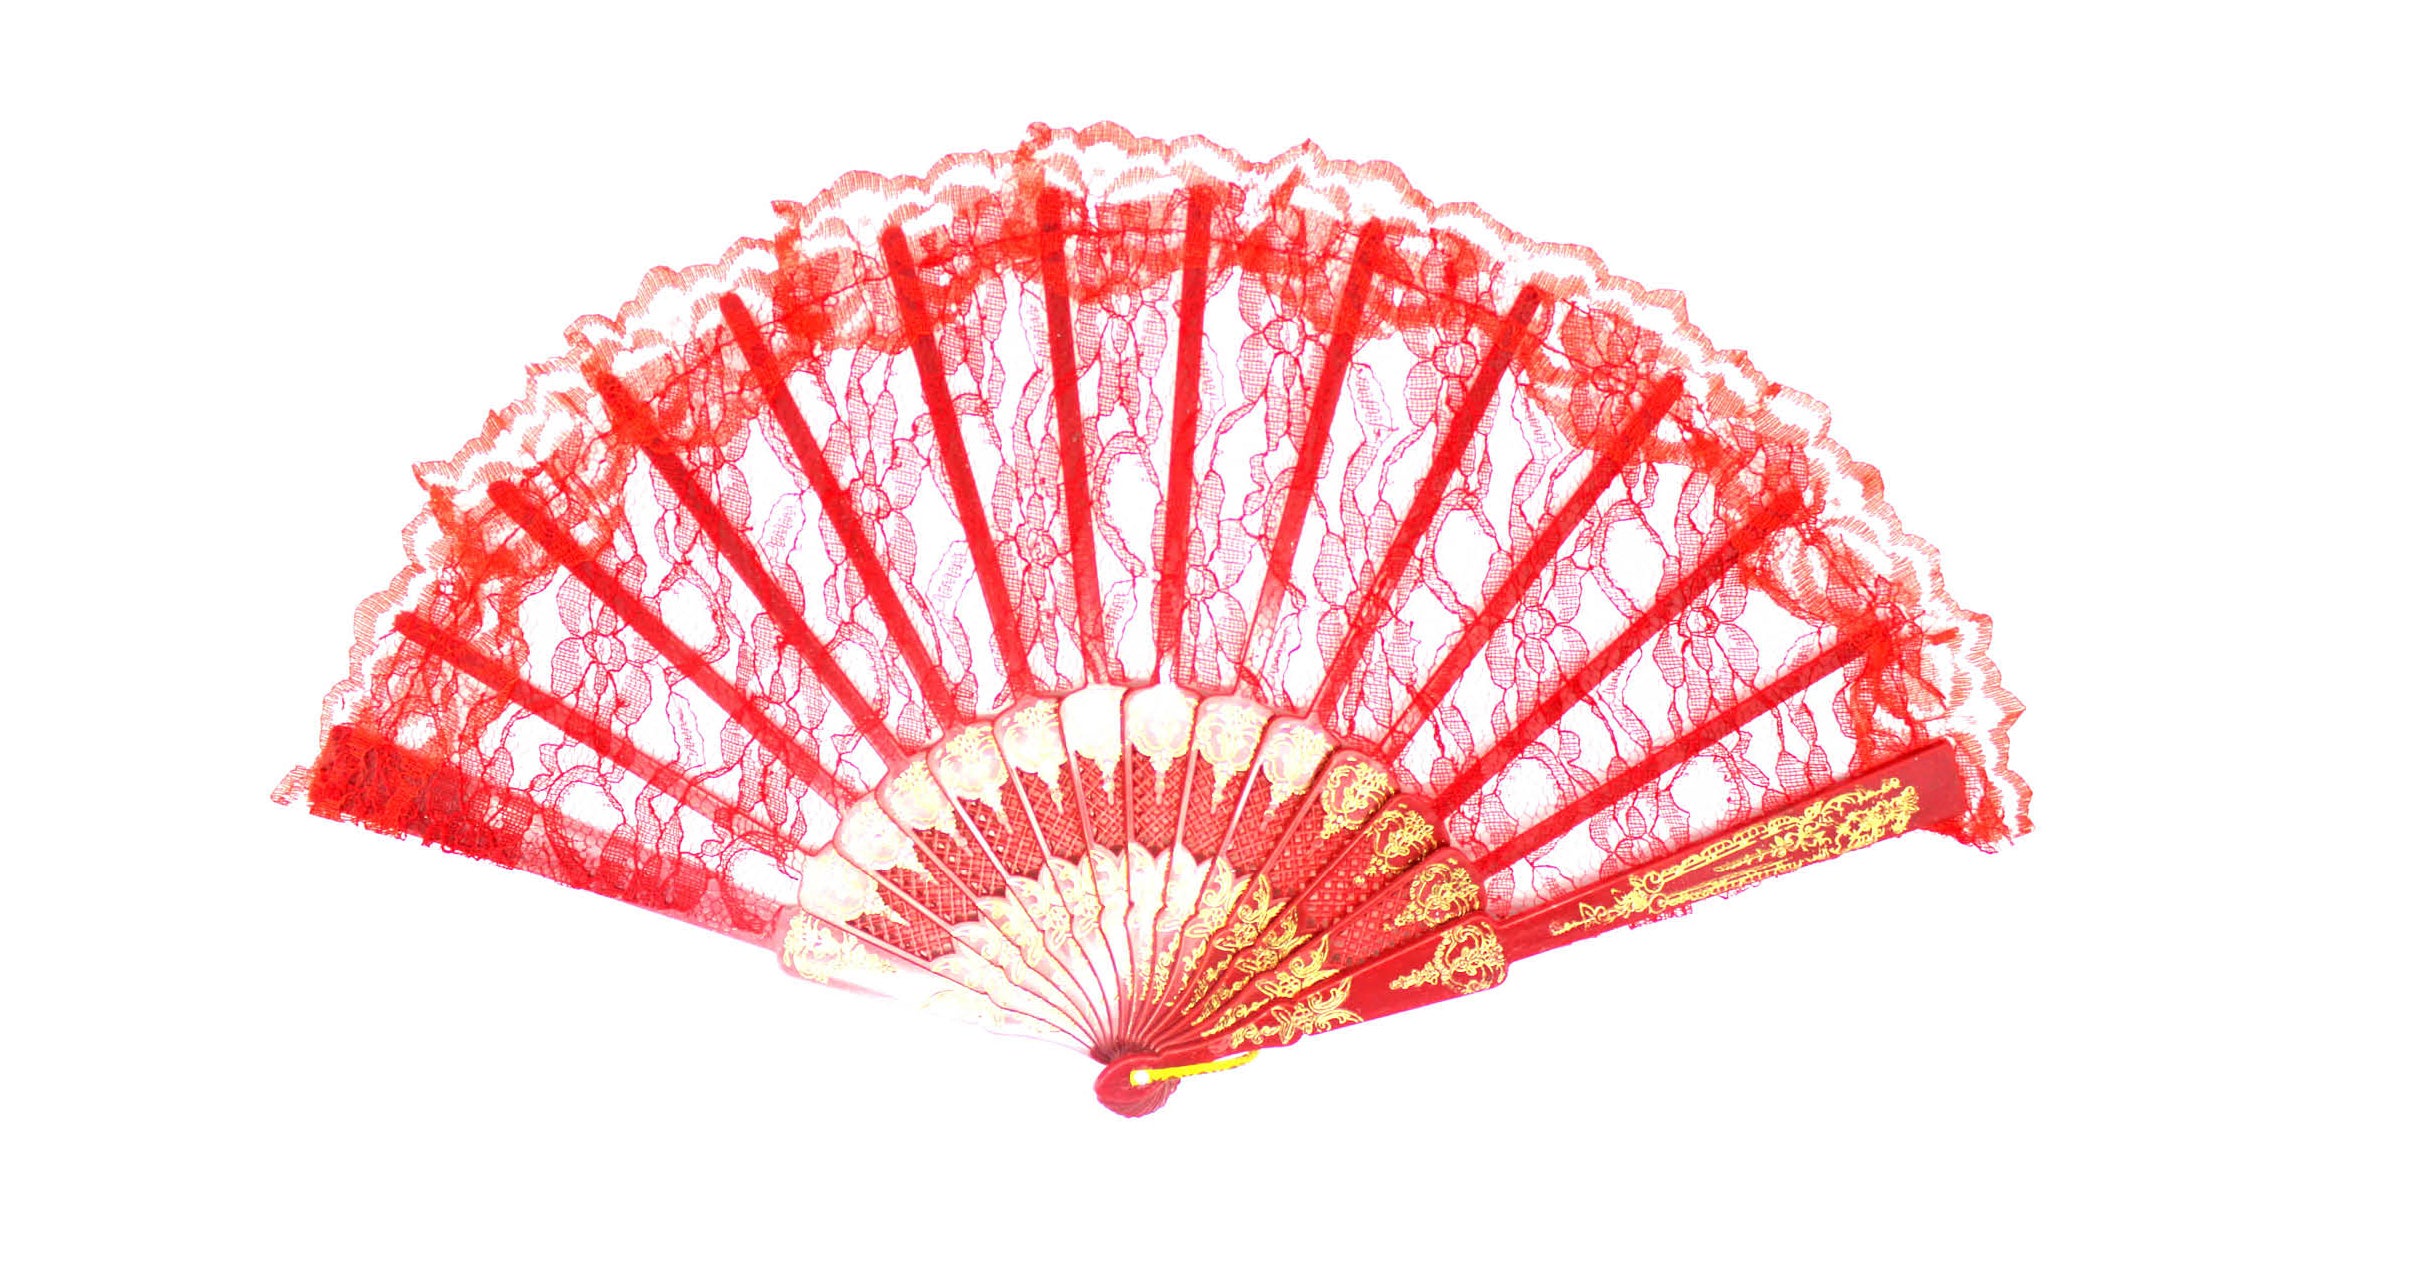 Red Lace Fan